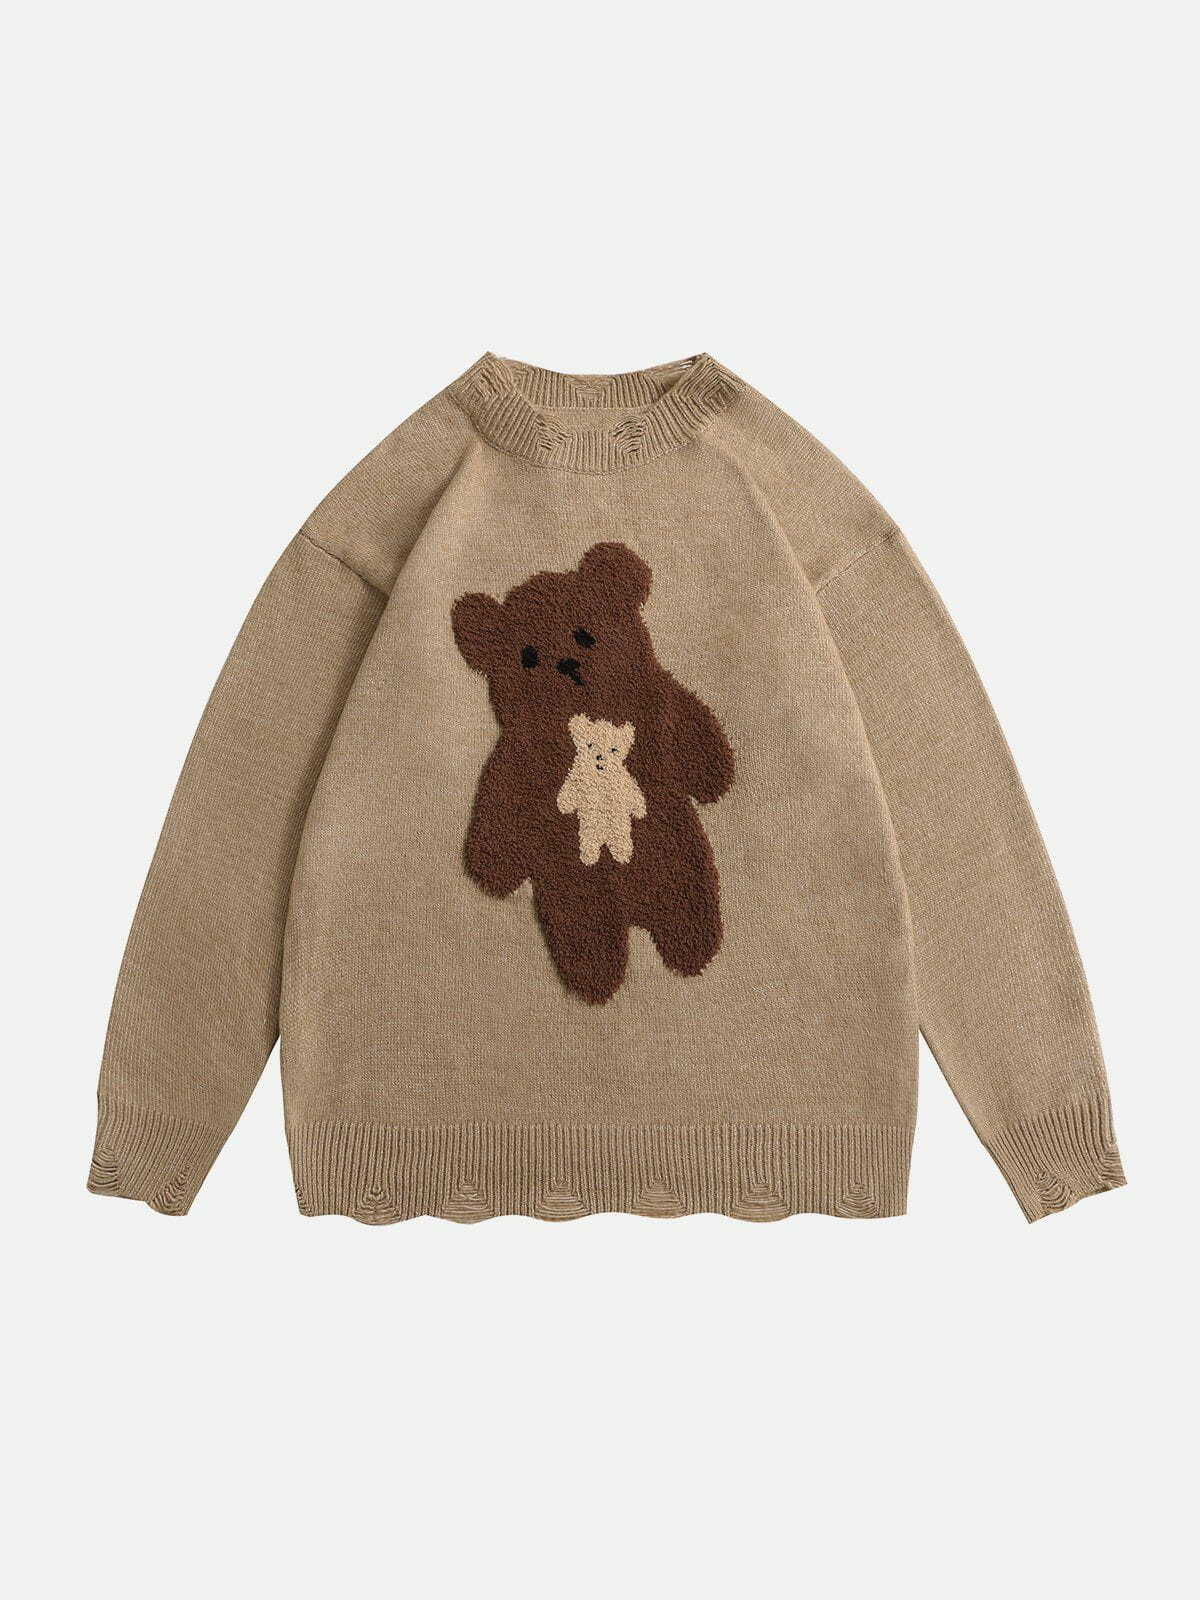 raw edge flocked bear sweater edgy y2k fashion essential 3168